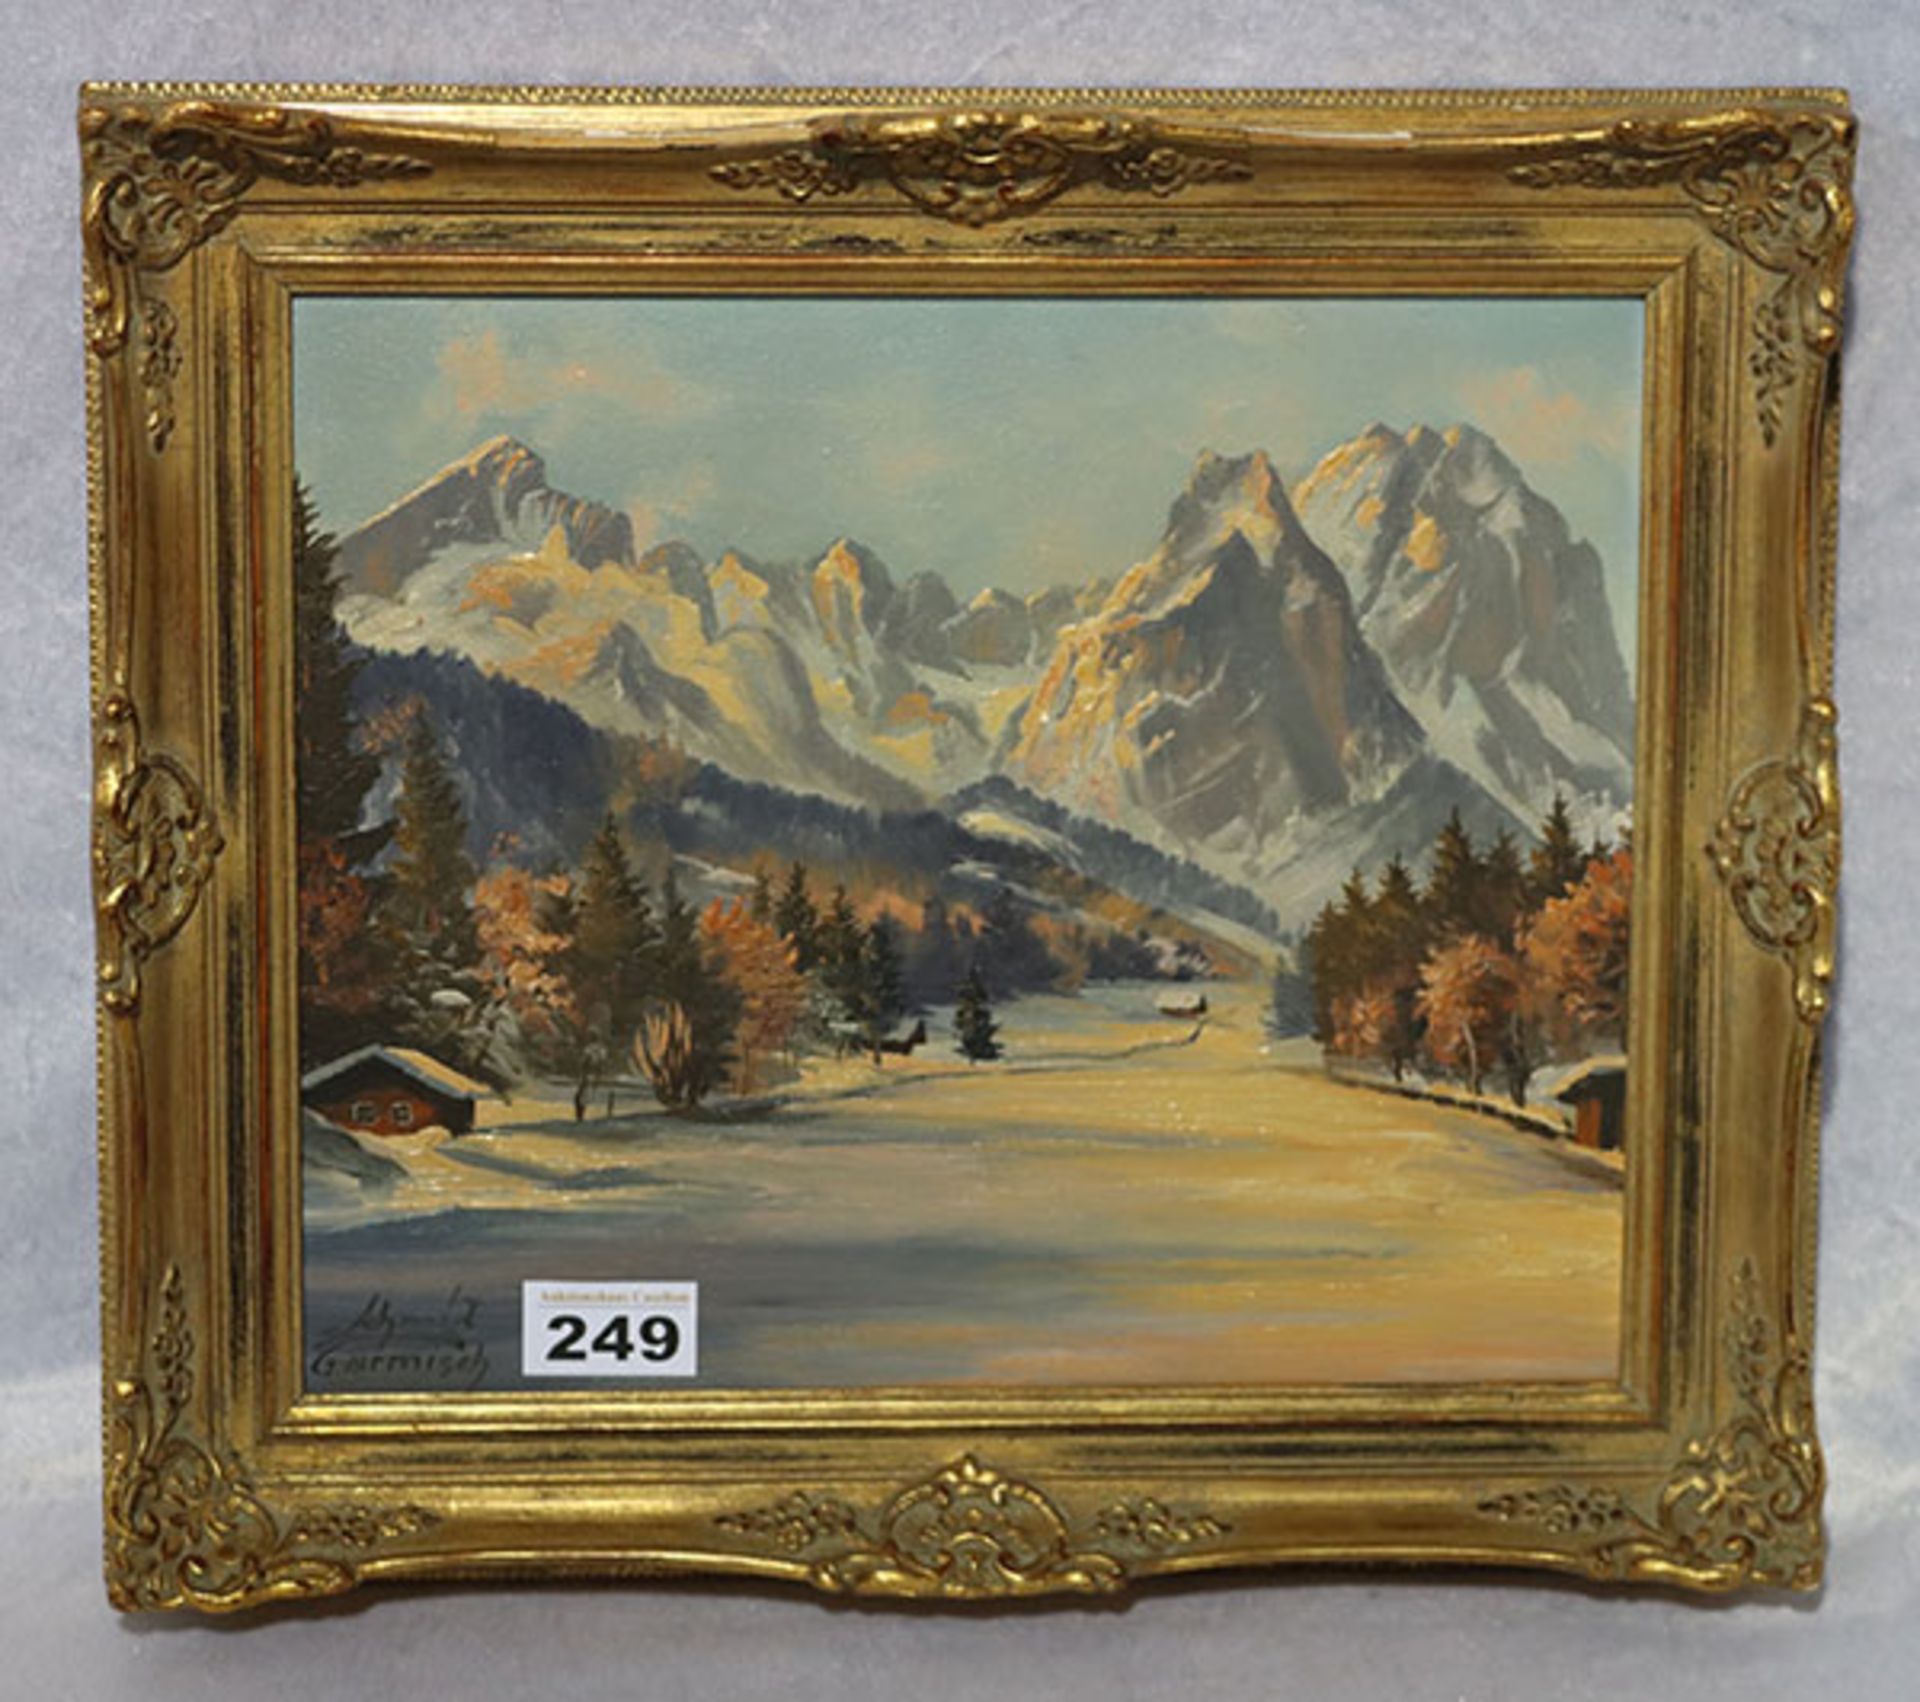 Gemälde ÖL/LW 'Wettersteingebirge im Winter', signiert Schmid, Garmisch, gerahmt, Rahmen beschädigt,